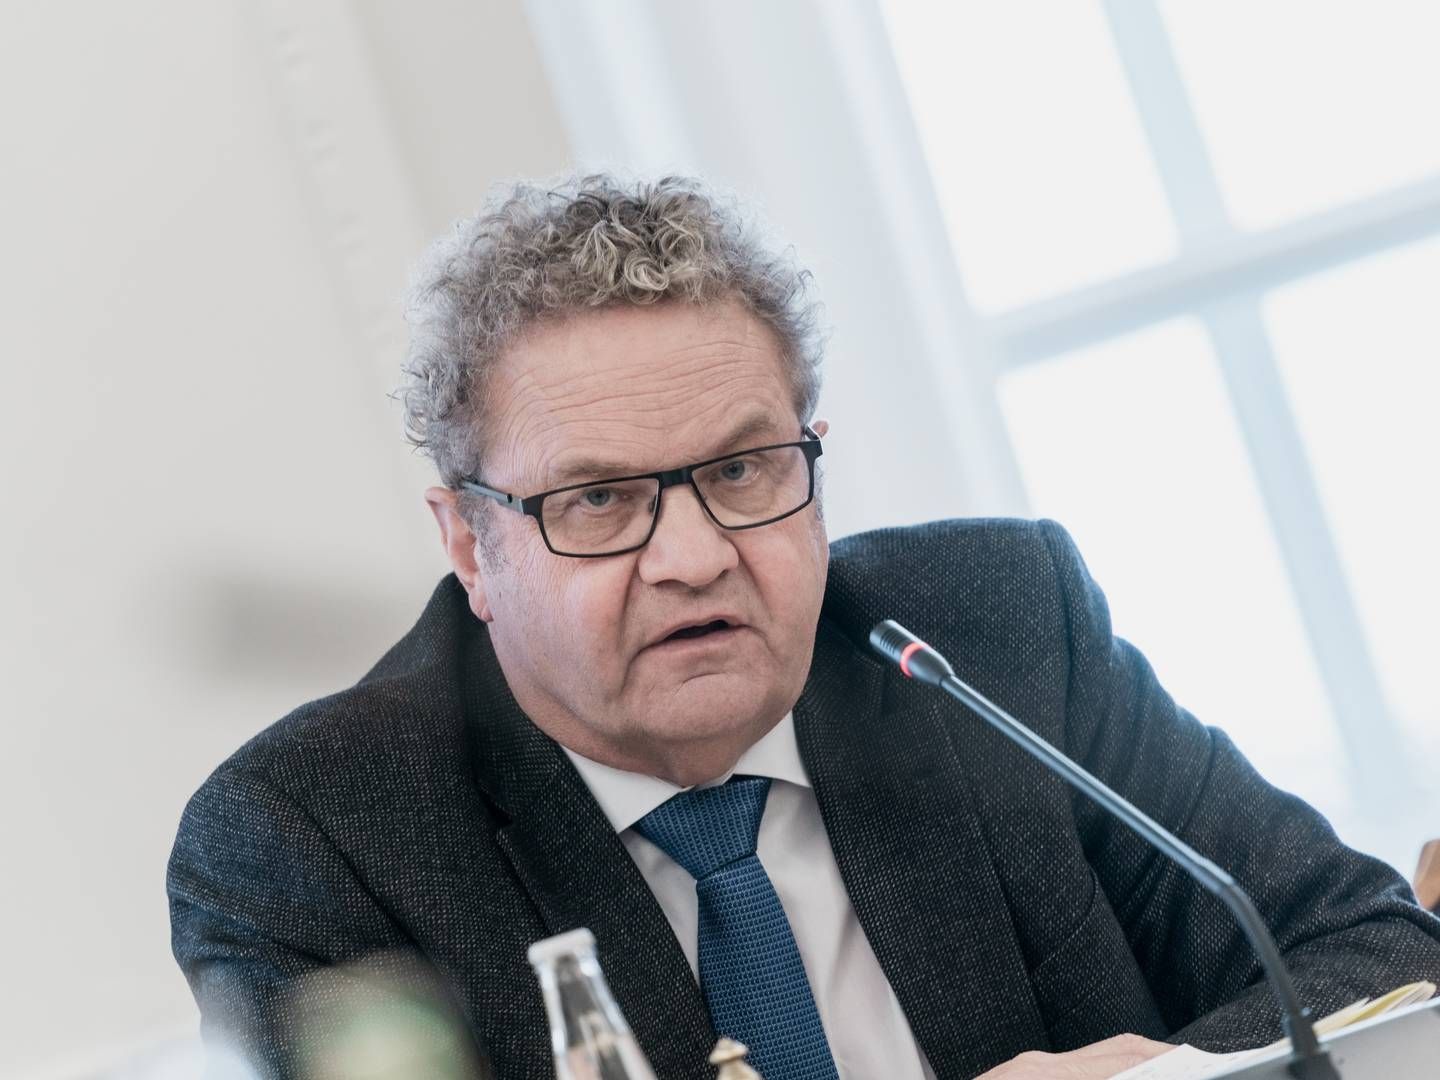 Preben Bang Henriksen, advokat og Venstre-politiker, undrer sig over forklaringerne i Messerschmidt-sag. | Foto: Aleksander Klug